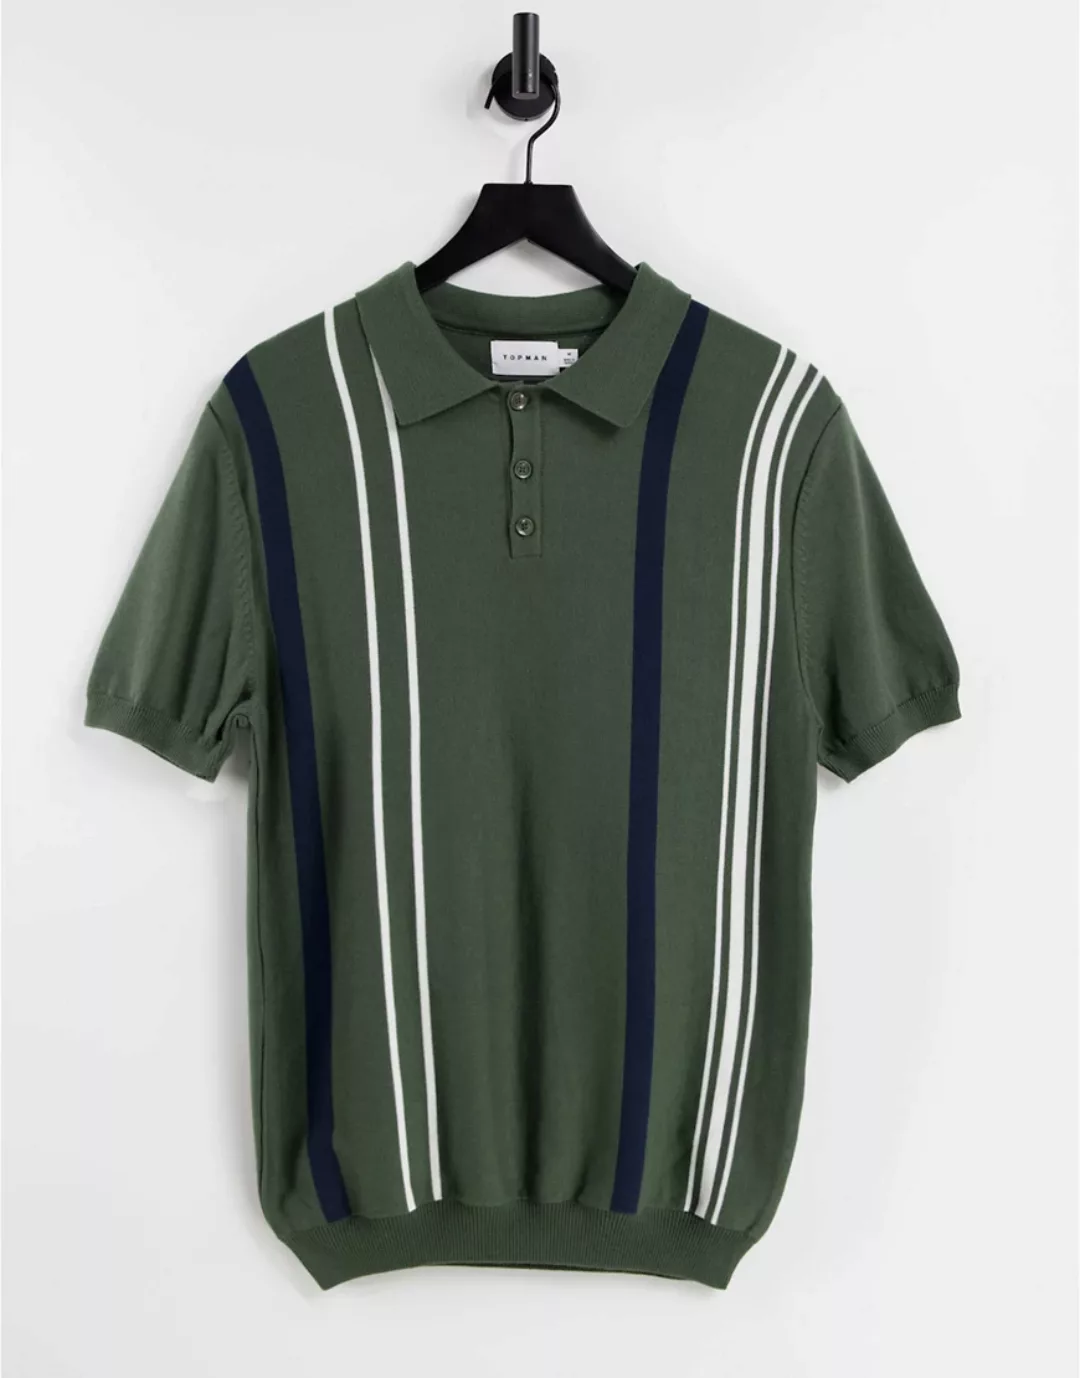 Topman ‑ Polohemd aus Strick in Khaki und Weiß gestreift-Grün günstig online kaufen